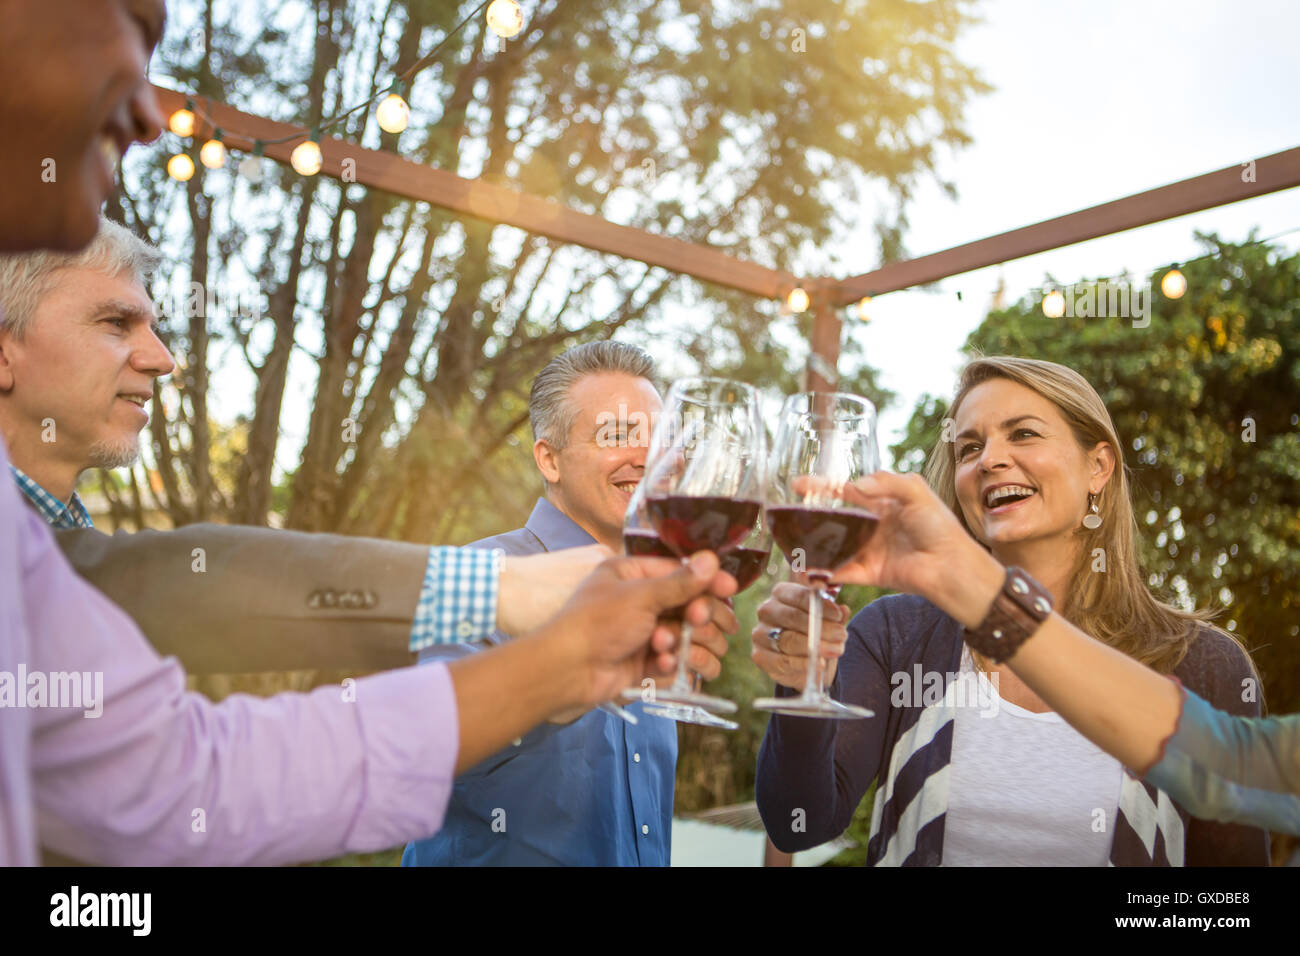 Coppia di amici in un cerchio facendo un vino rosso toast al party in giardino Foto Stock